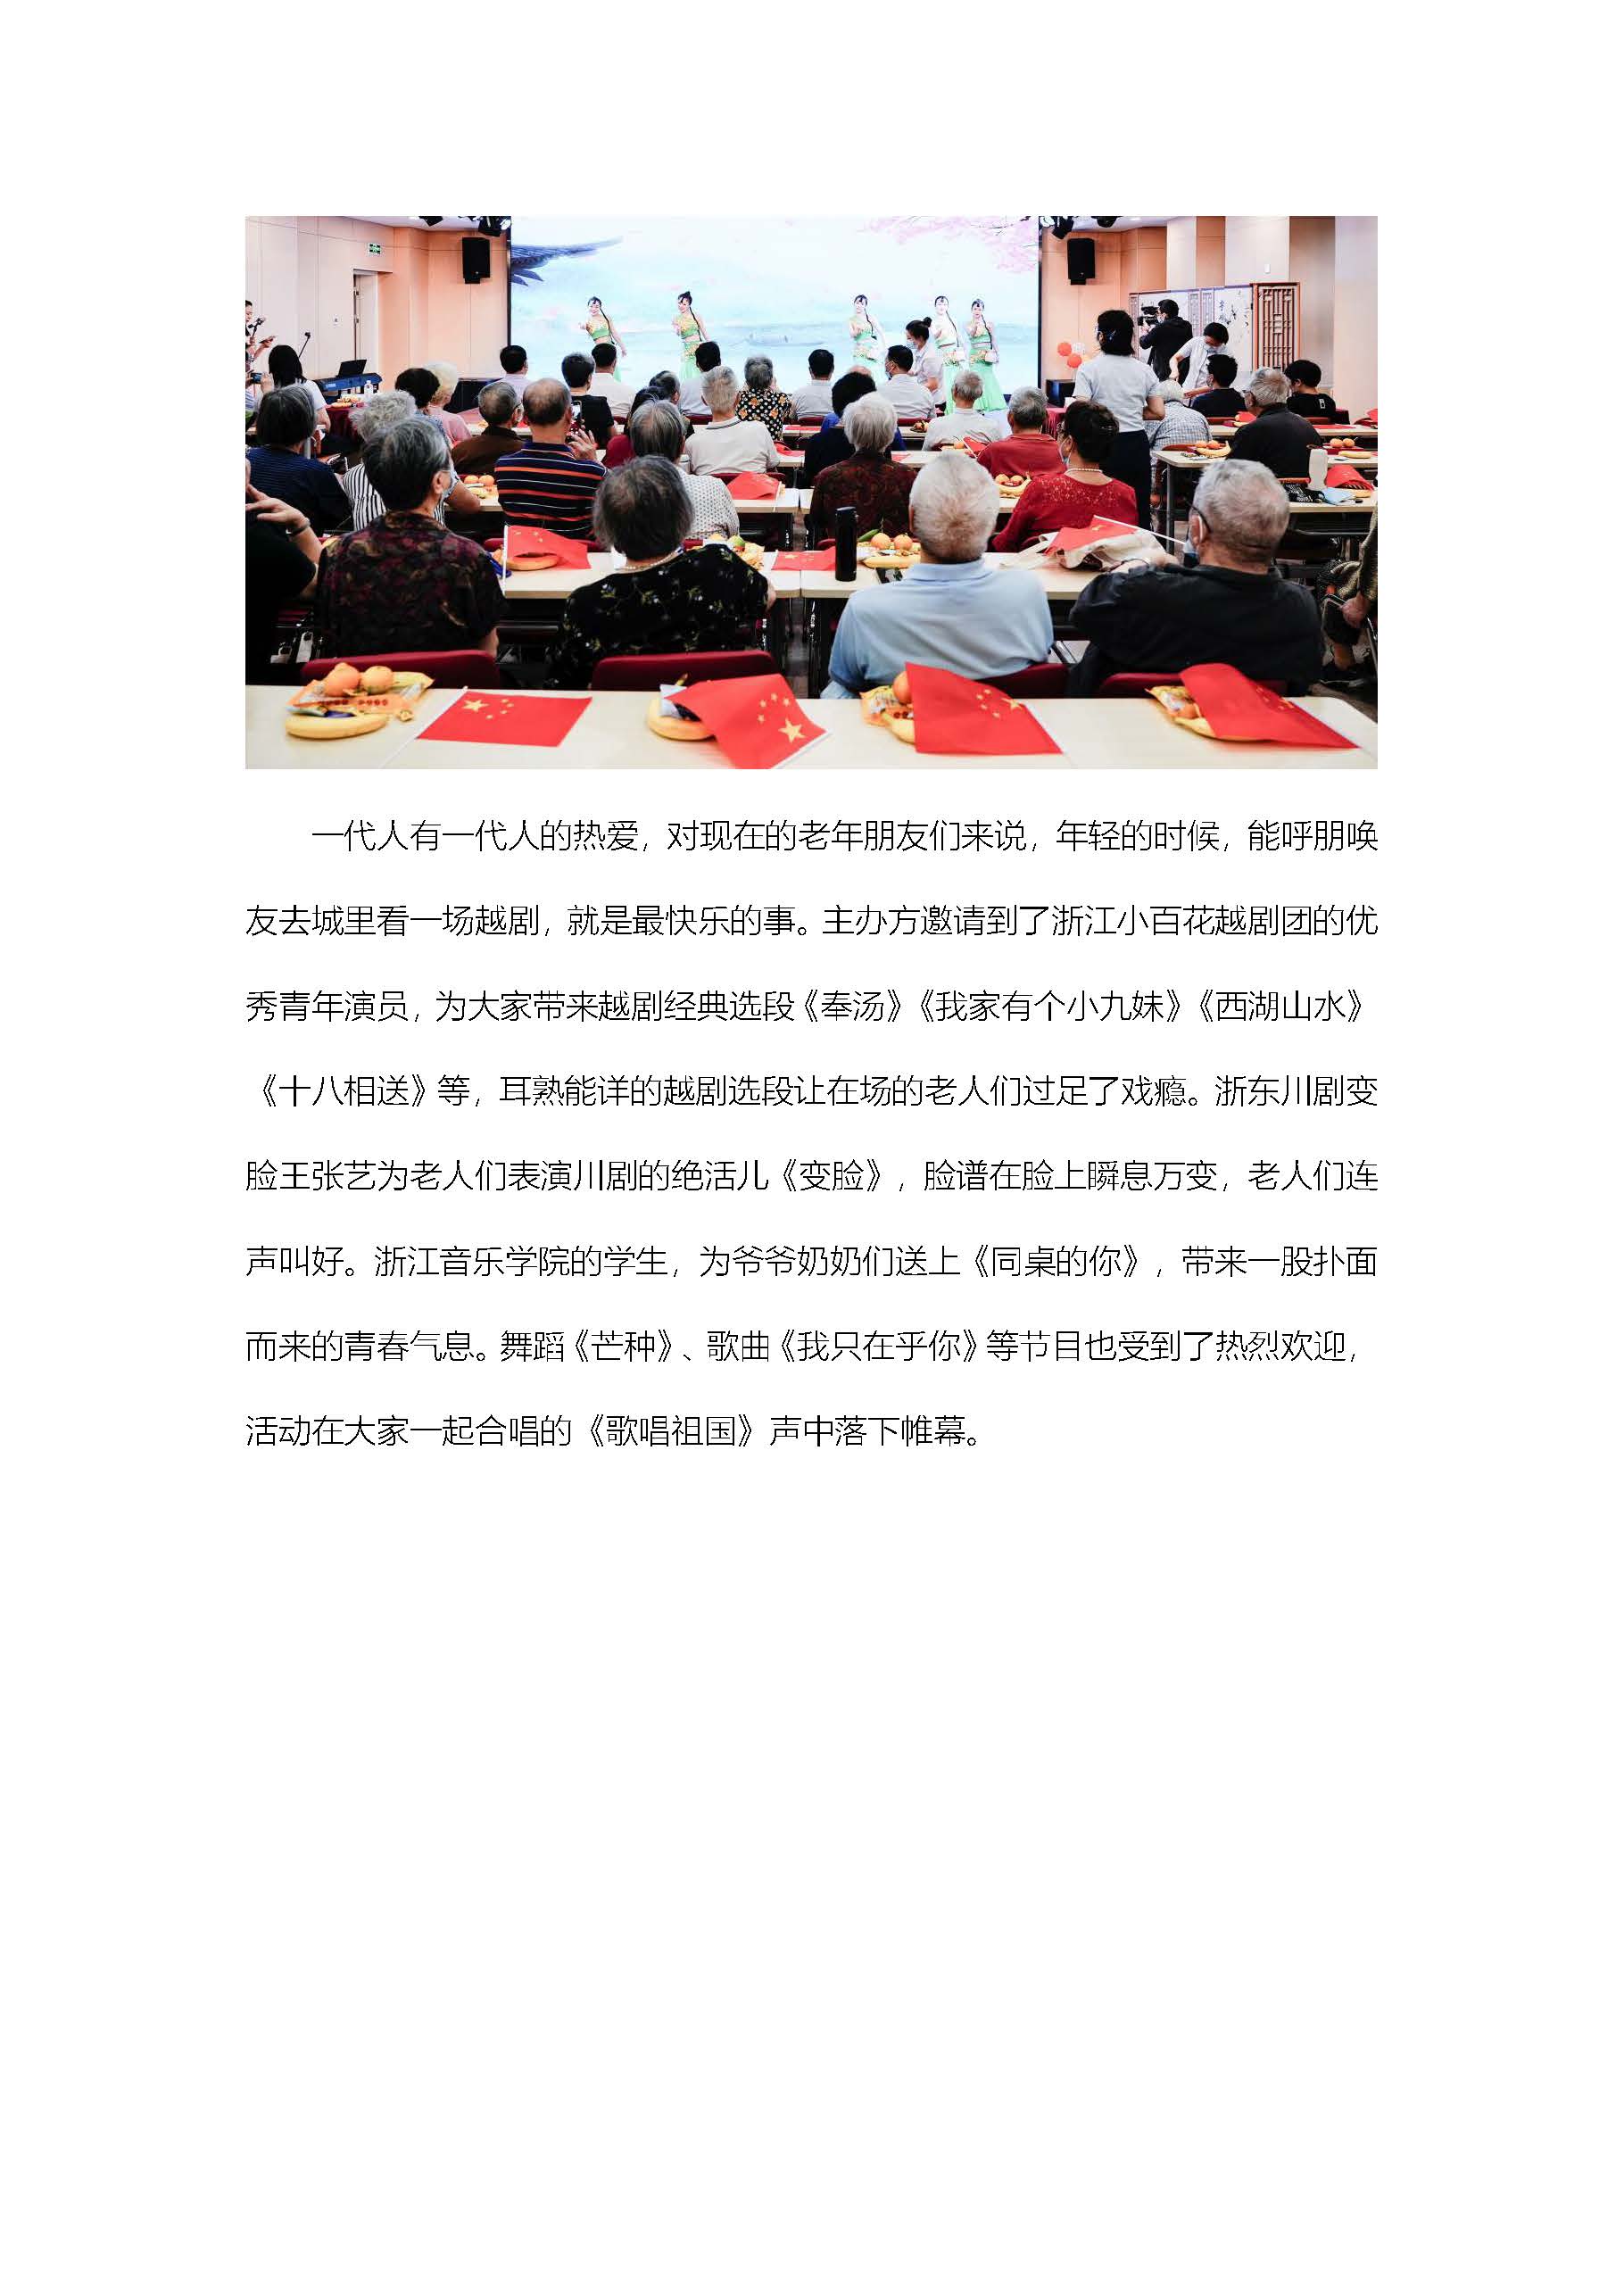 幸福颐养爱在重阳—福彩暖万家活动走进杭州市社会福利中心2.jpg